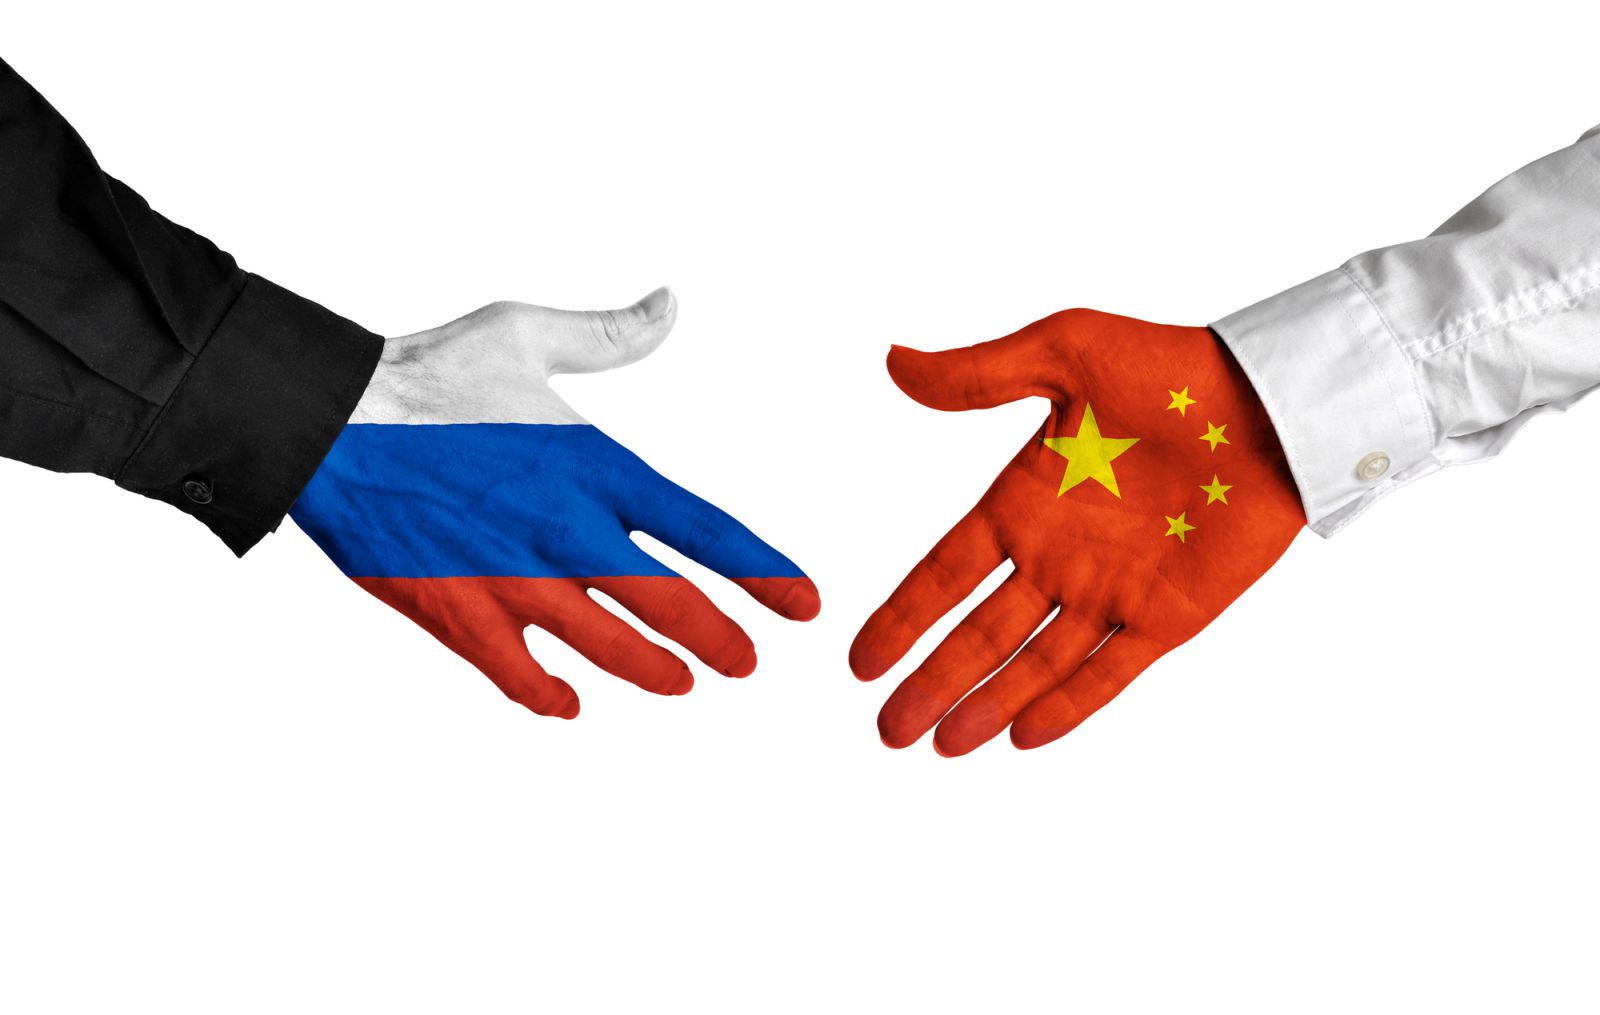 Nhưng, trong bối cảnh trừng phạt từ phương Tây, tình cảm Nga-Trung vẫn bền chặt?